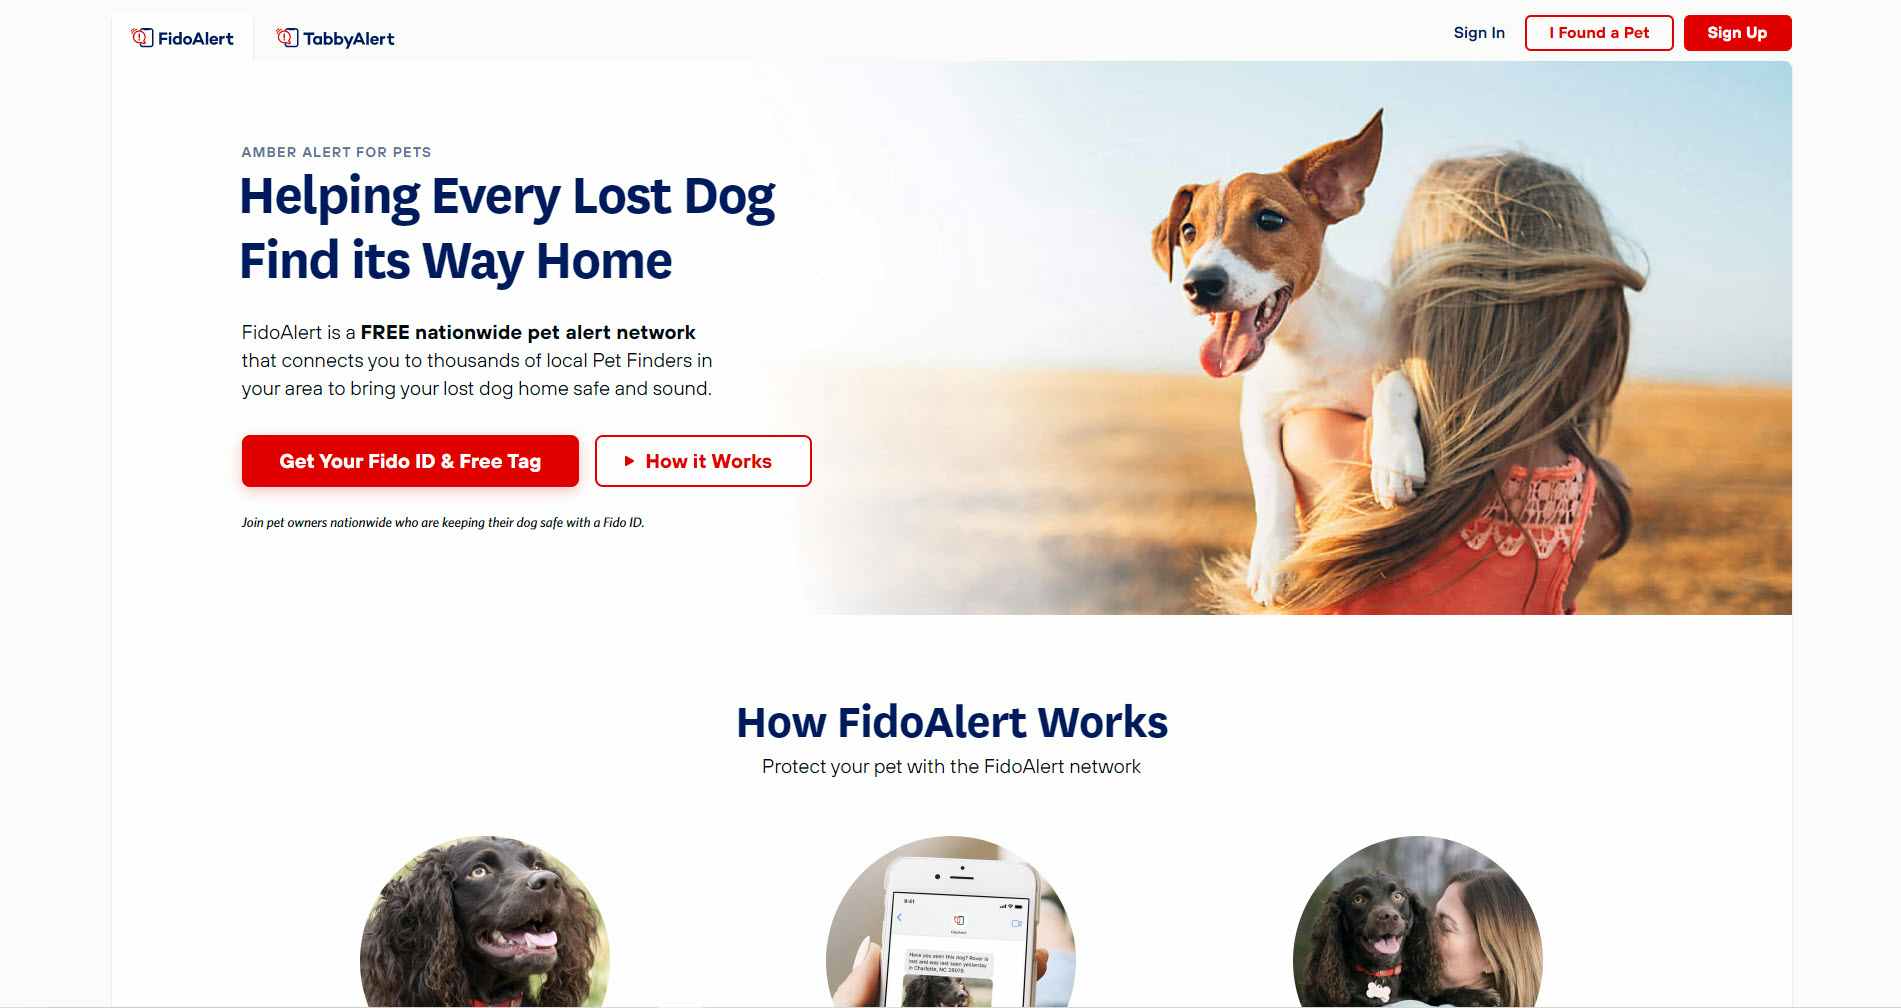 FidoAlert website screenshot with a person holding a dog.